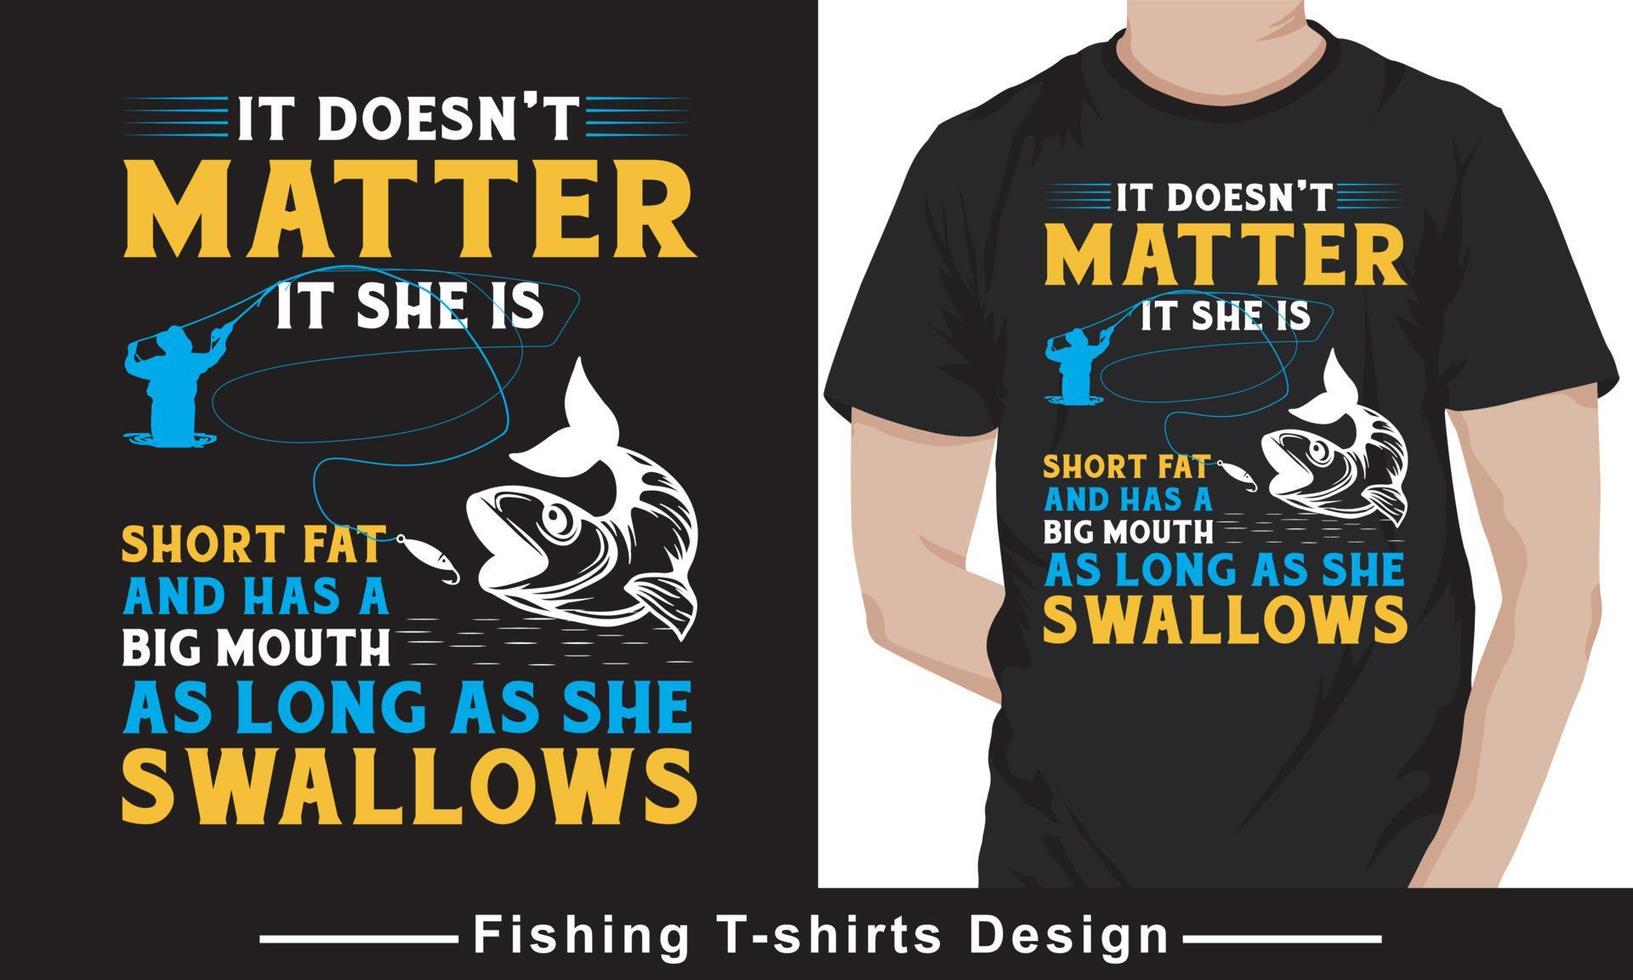 citation de pêche typhographie vecteur modèle de conception de t-shirt vecteur pro